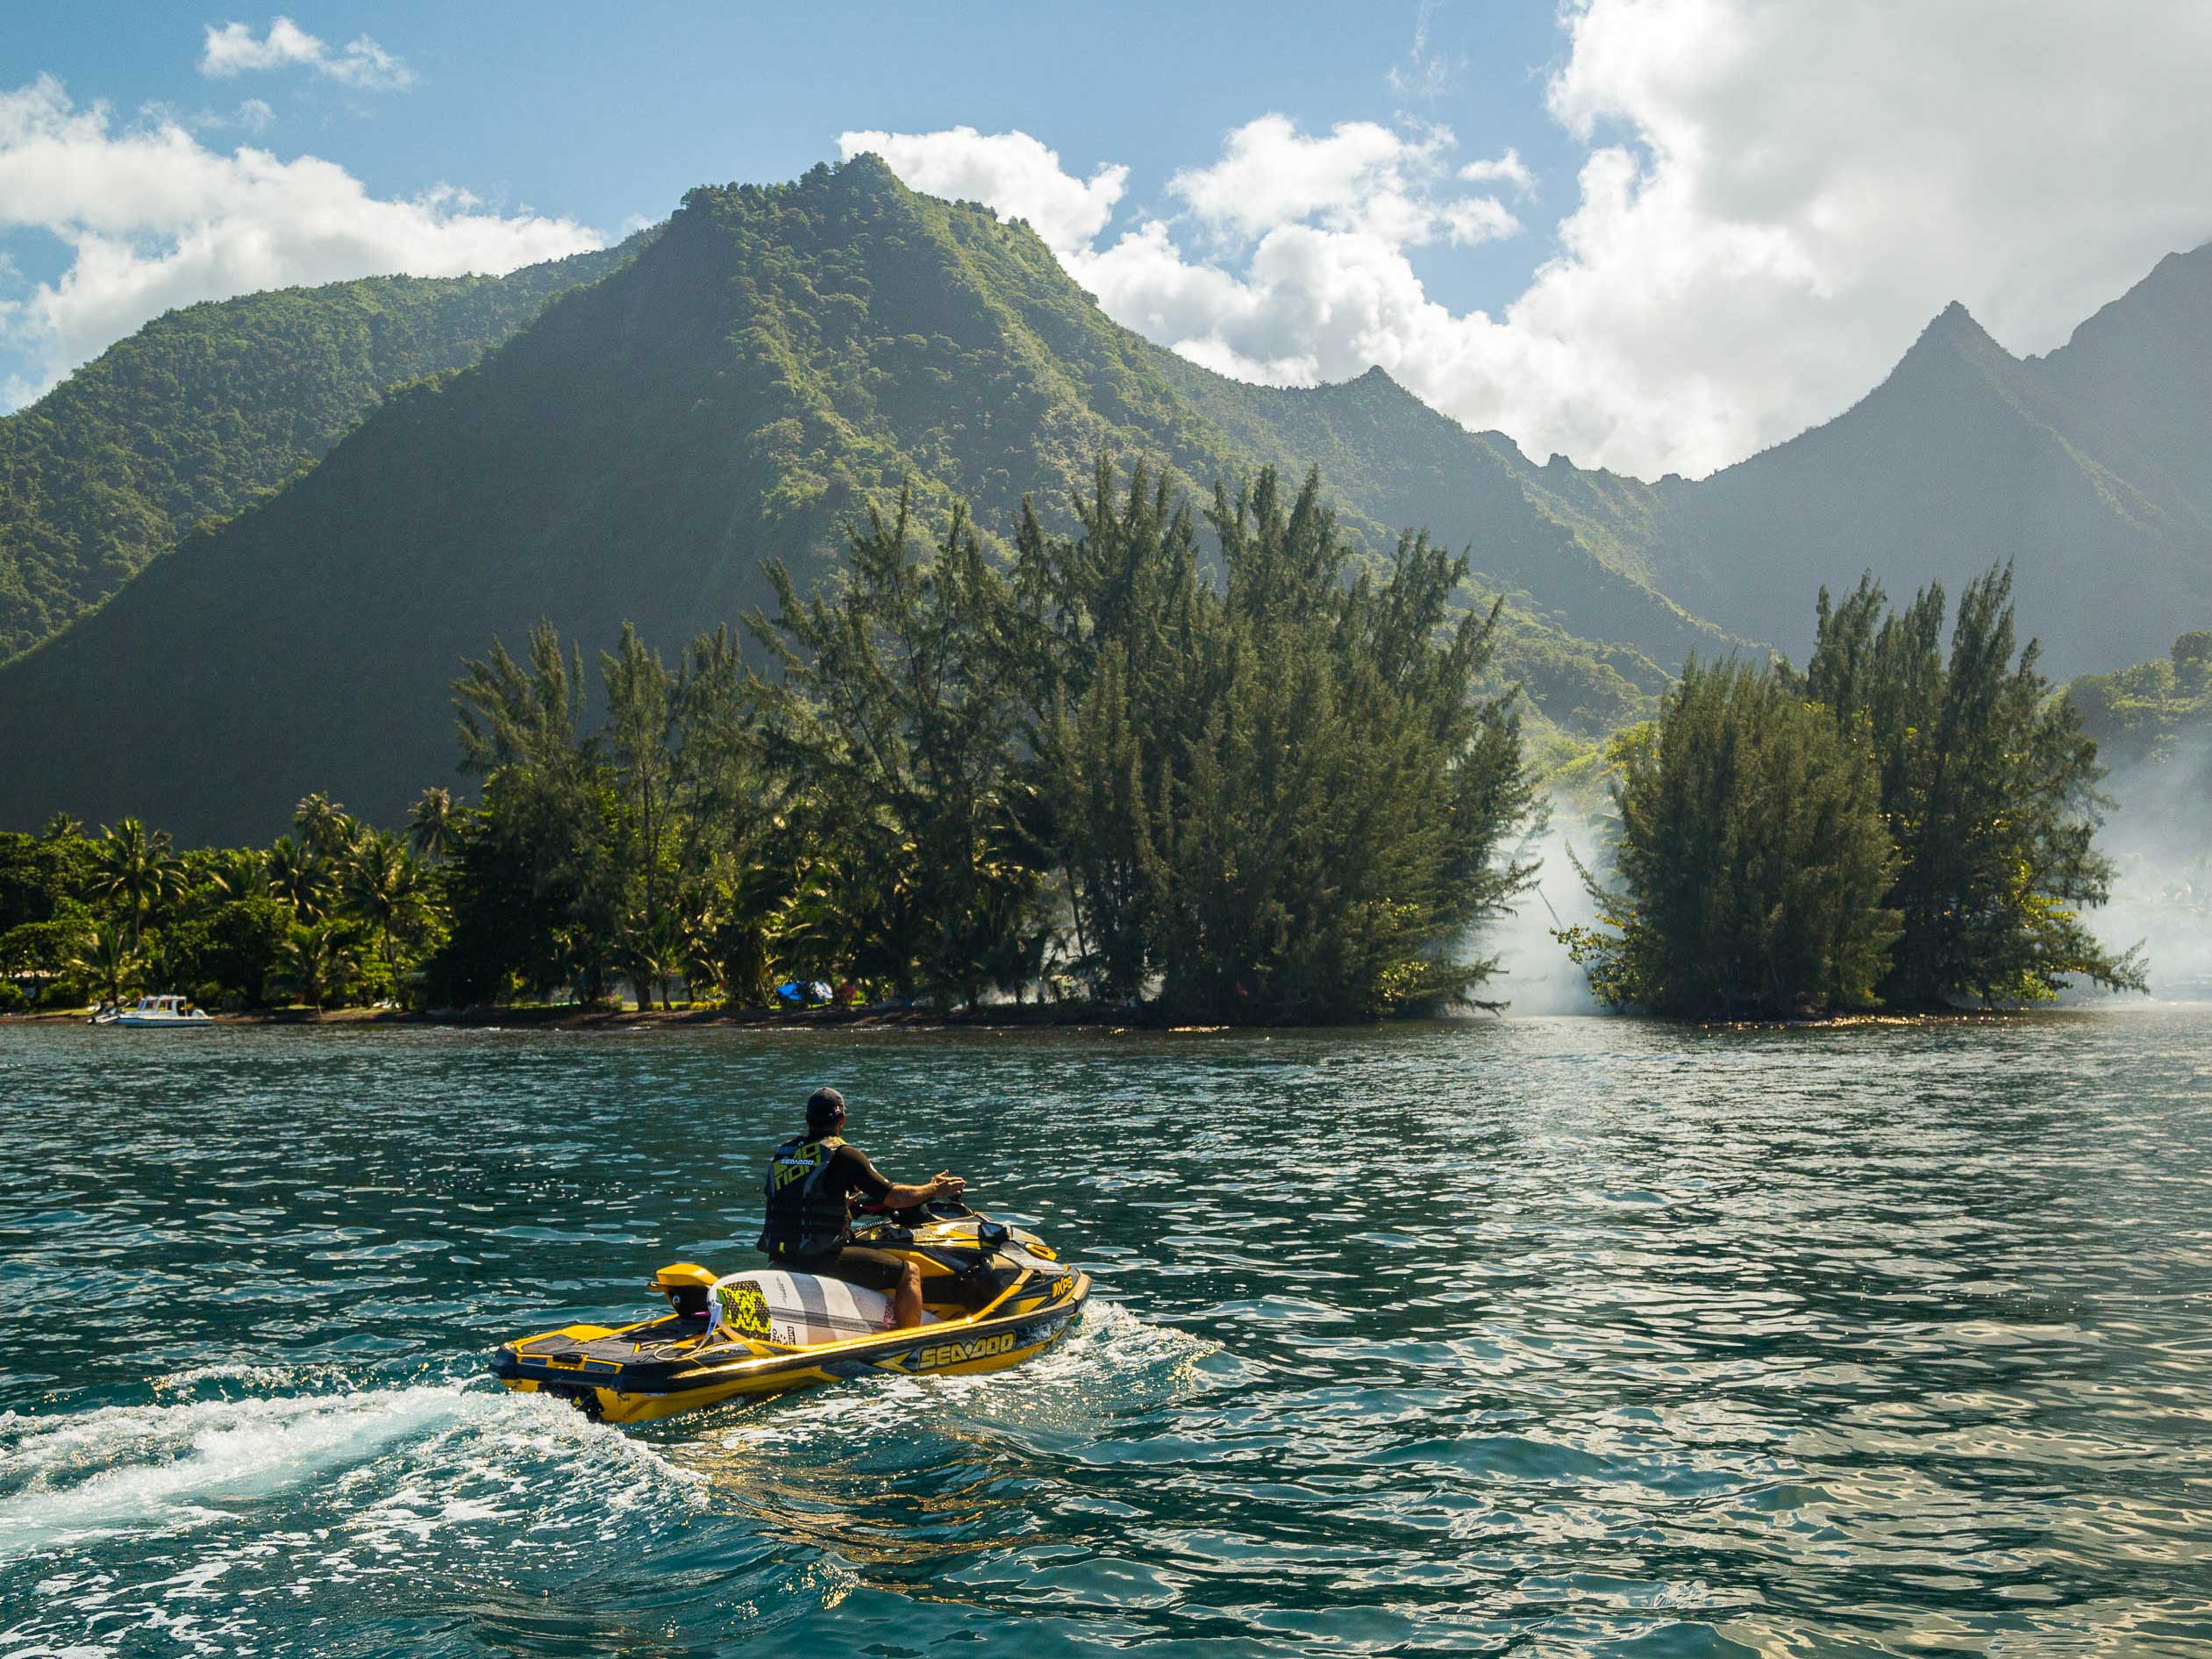 Michel Bourez on a Sea-Doo in Tahiti